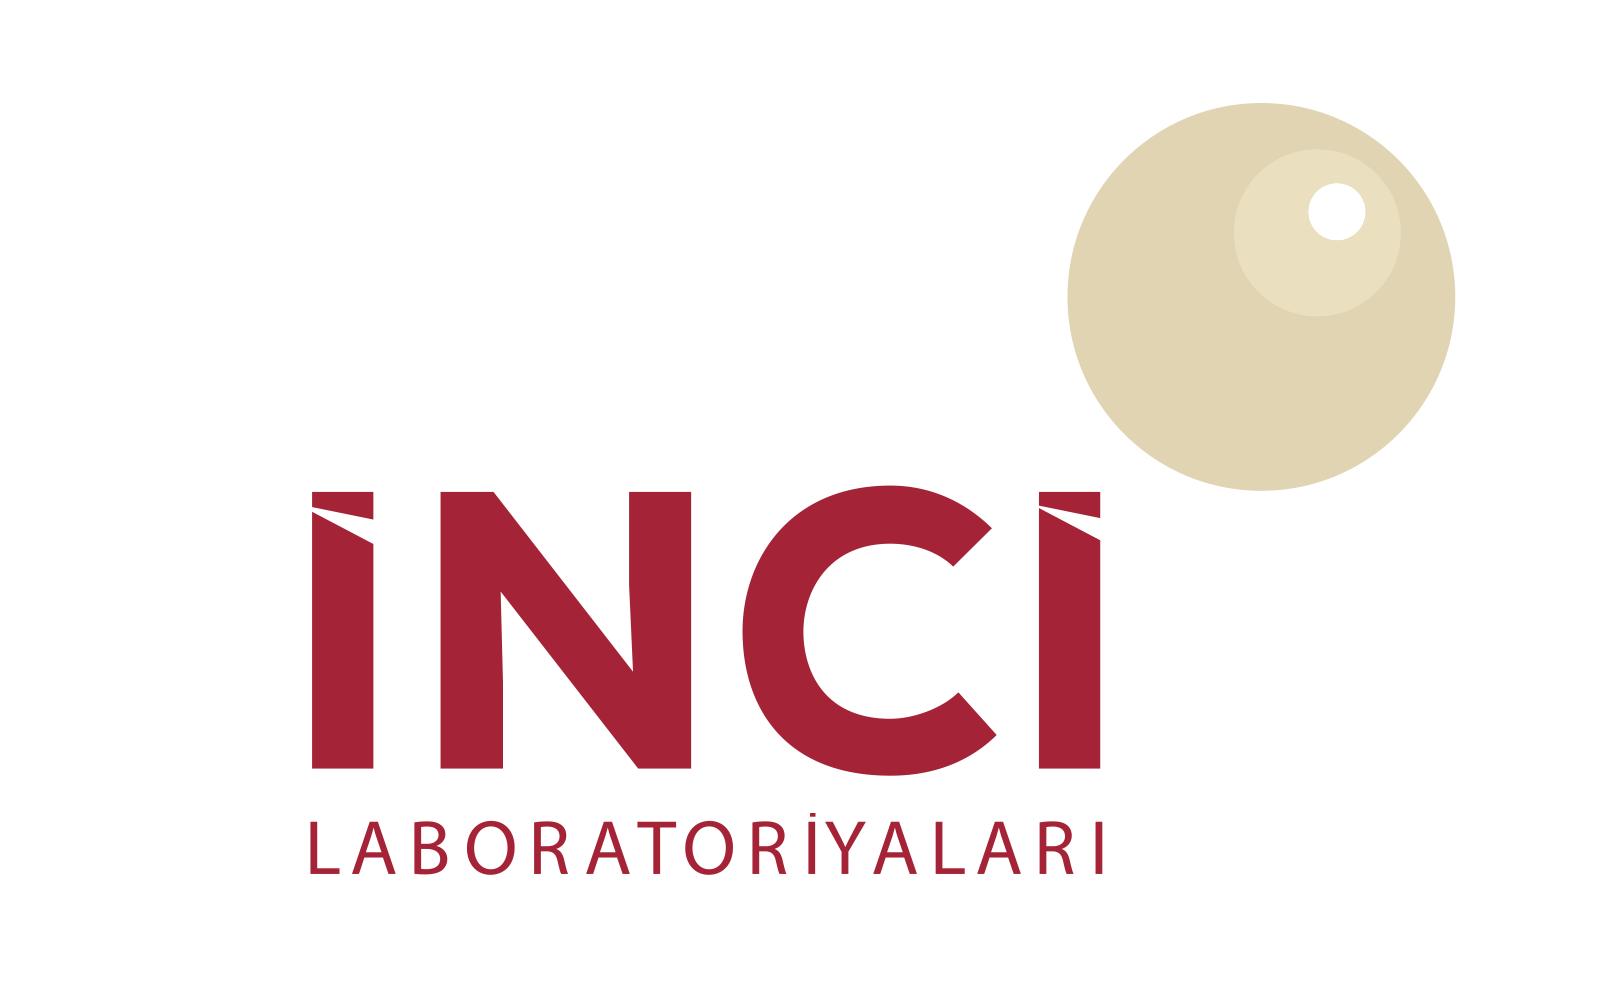 Inci Laboratory